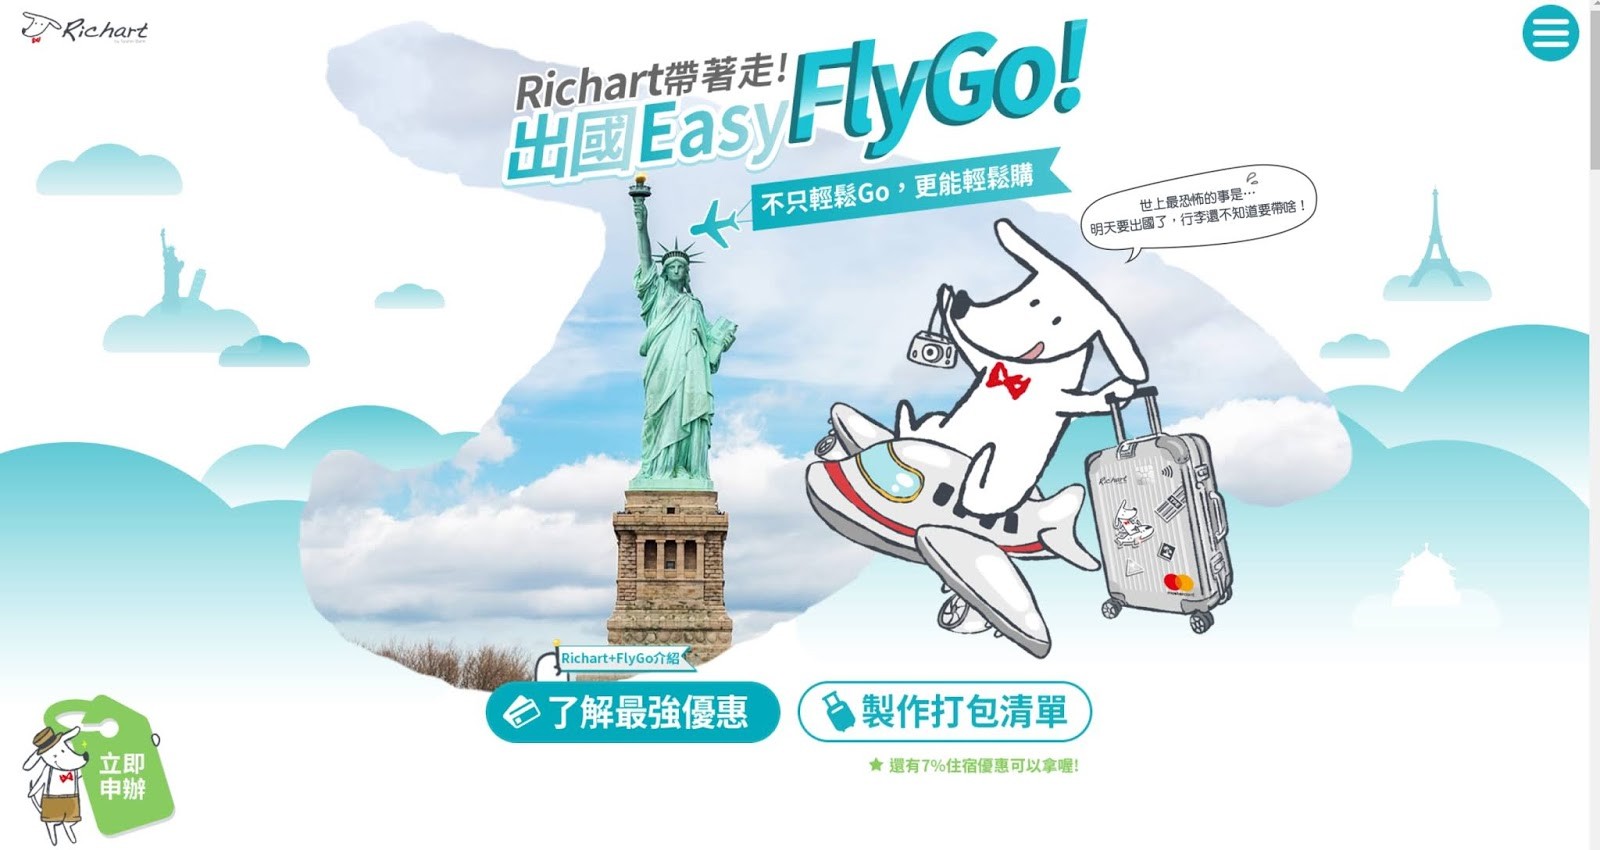 台新FlyGo卡(飛狗卡) ｜國外旅遊神卡，海外2.8現金回饋 第一手申辦流程 五分鐘完成